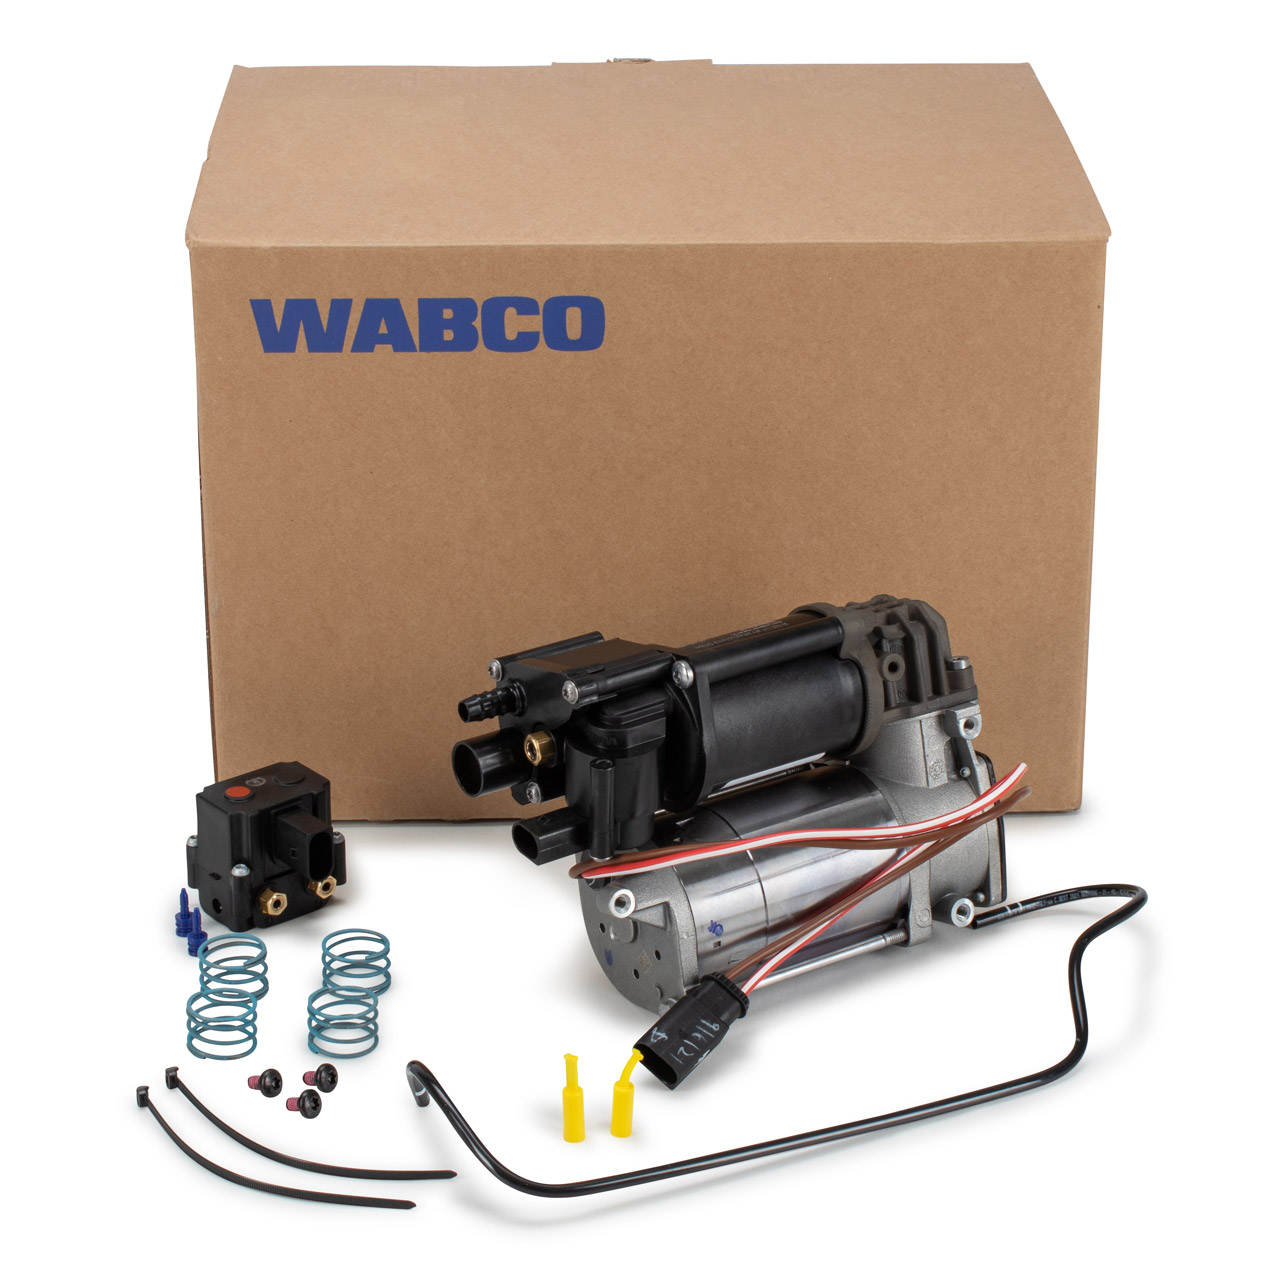 WABCO Kompressoren Luftfederung - 400.609.031.0 